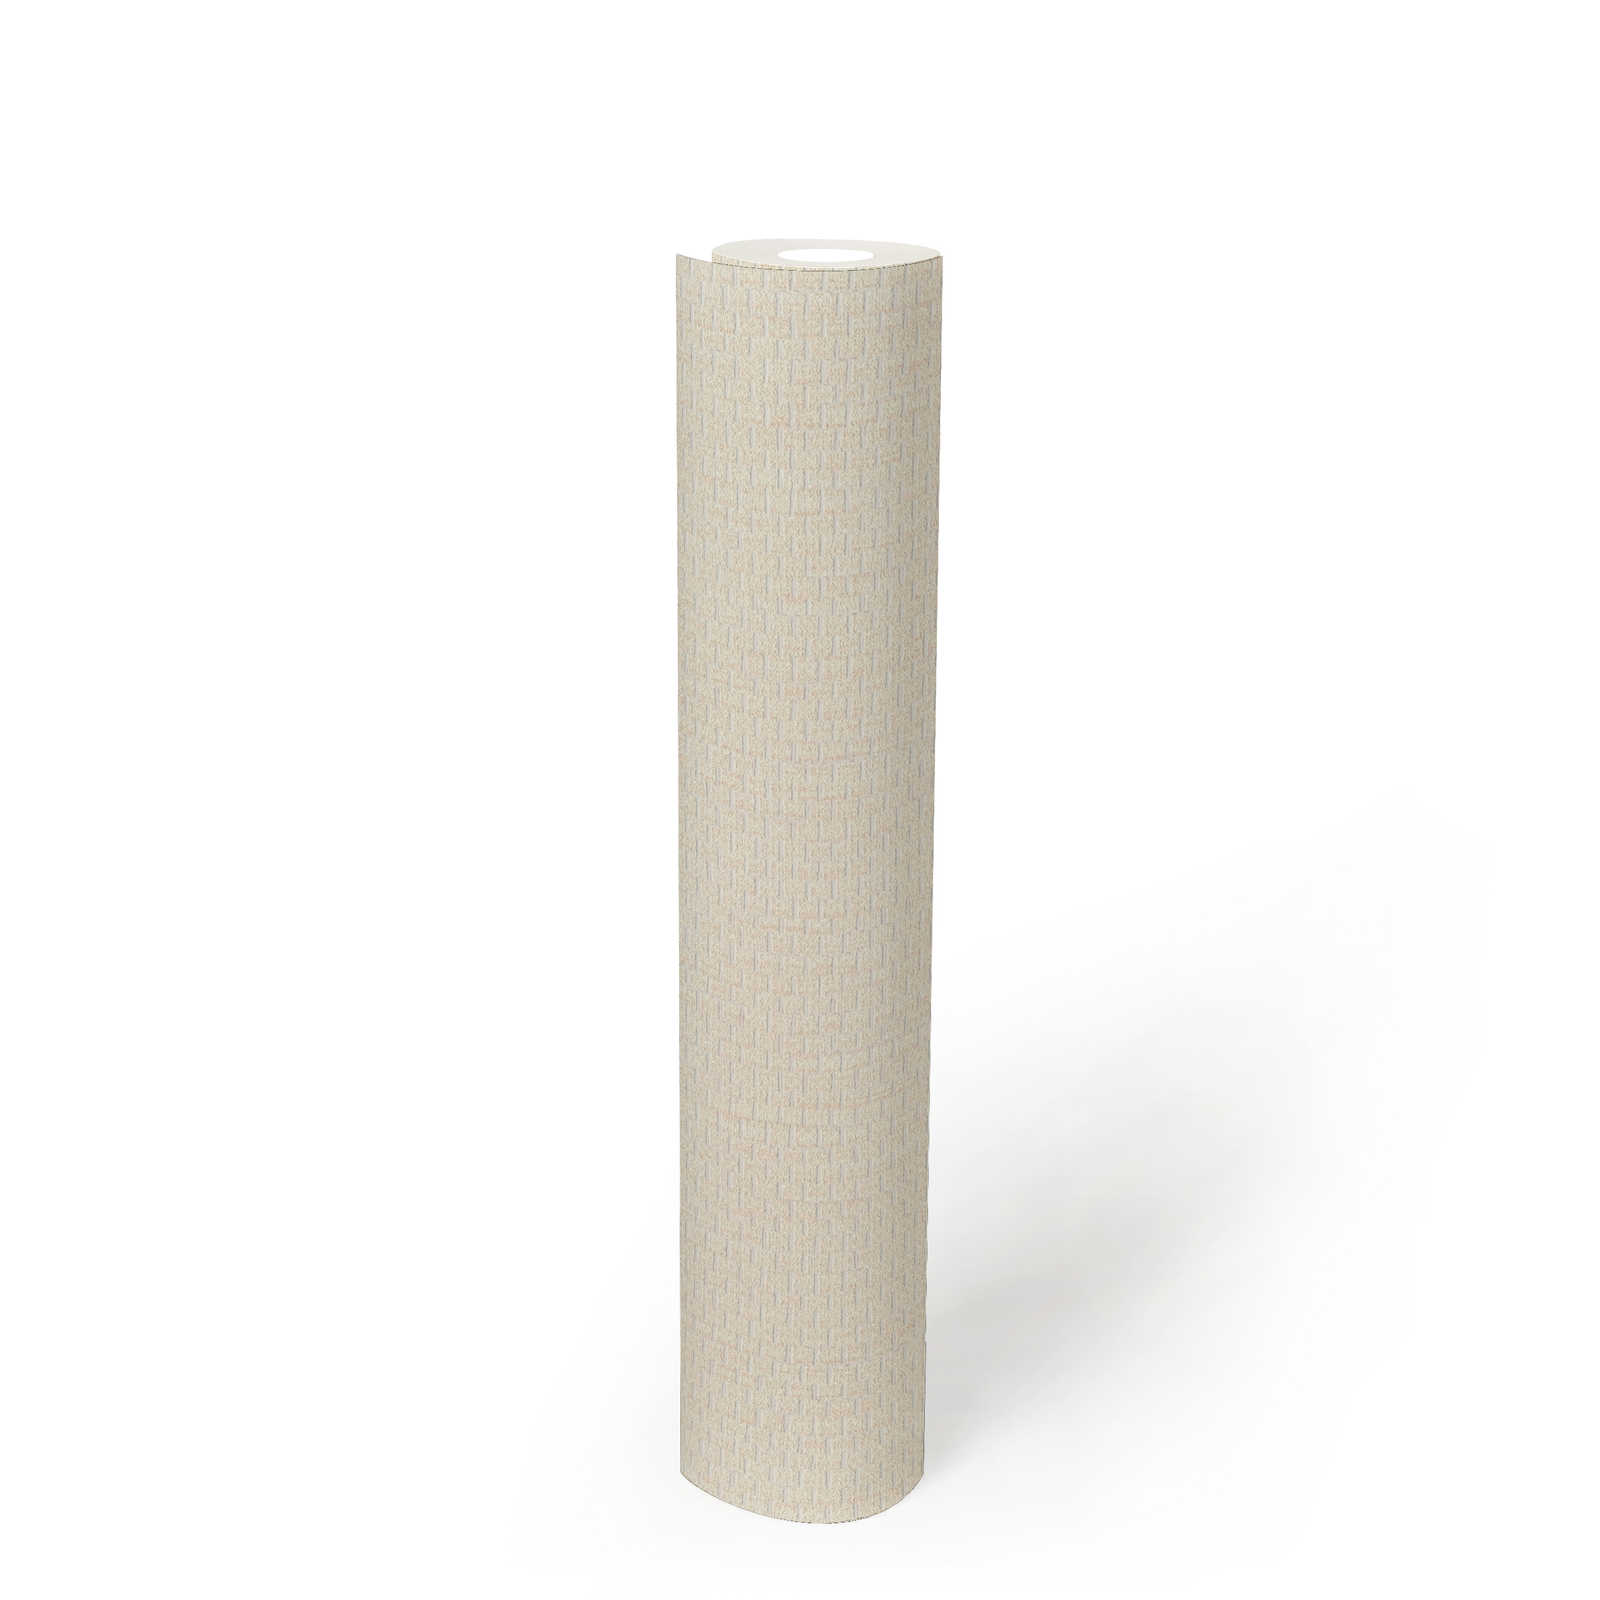             Tapete mit Bastmatten Design – Creme, Weiß
        